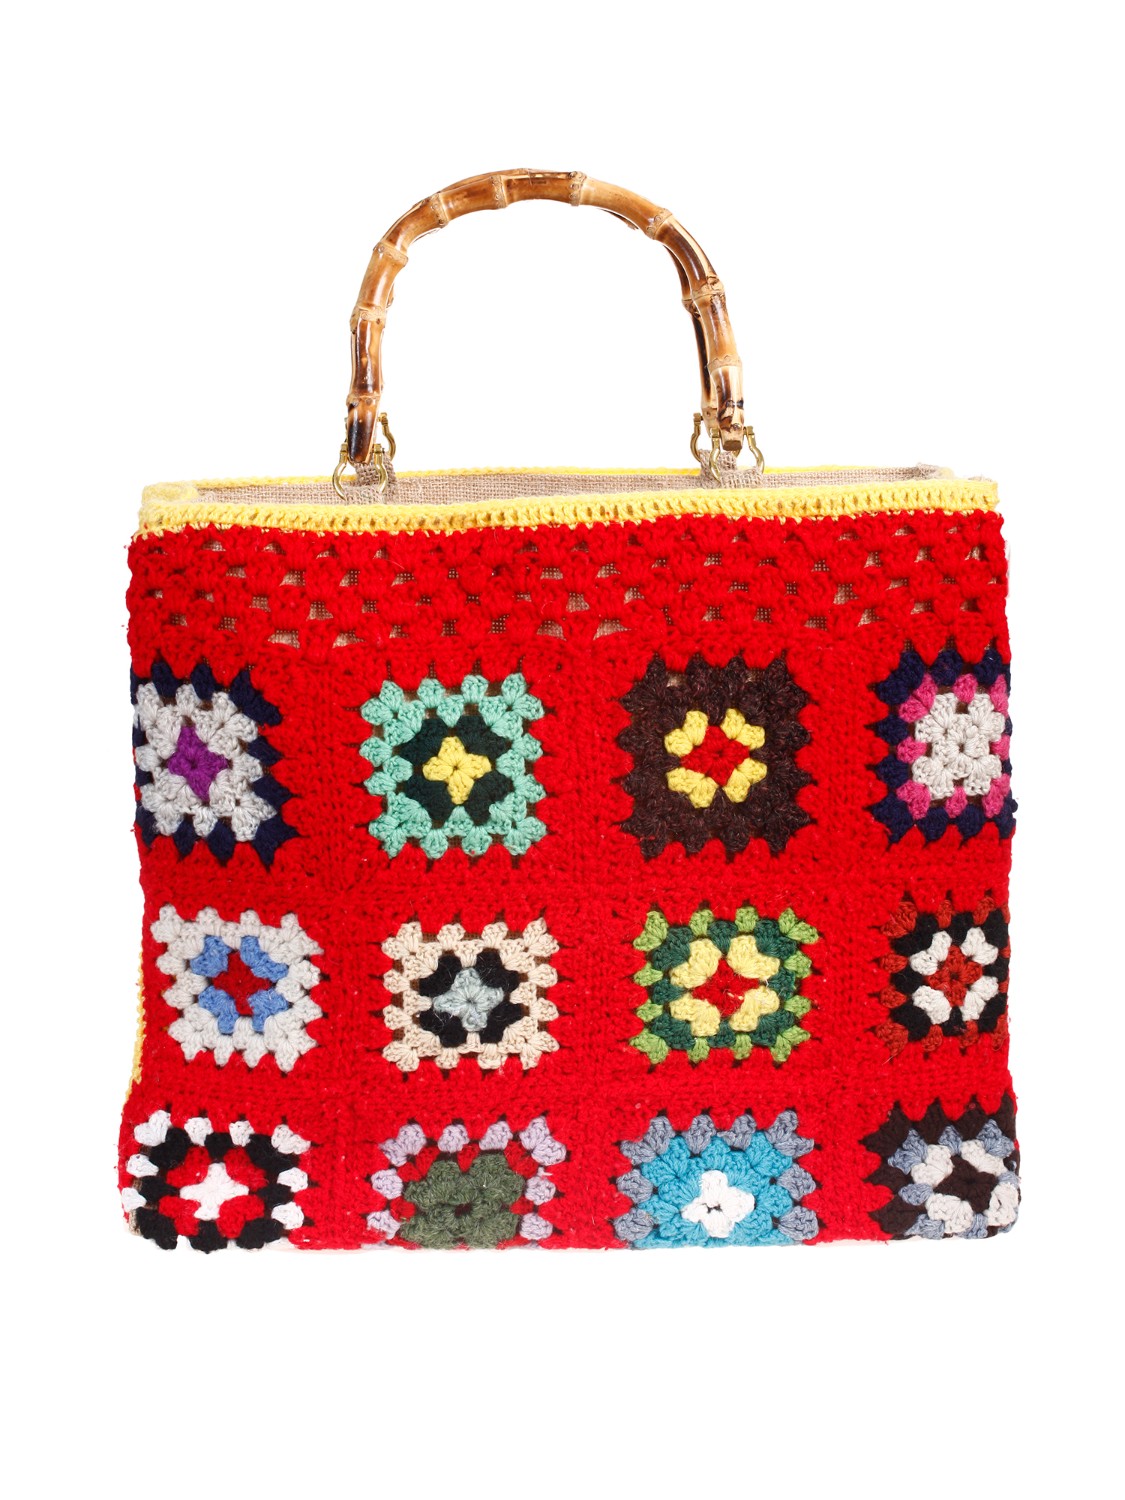 shop LA MILANESA Saldi Borsa: La Milanesa borsa Crochet XW1.
Dimensioni: altezza 35 cm larghezza 41 cm profondità 12 cm.
Composizione: 100% lana.
Made in Italy.. XW1 LADY CROCHET-2 ROSSO number 2851287